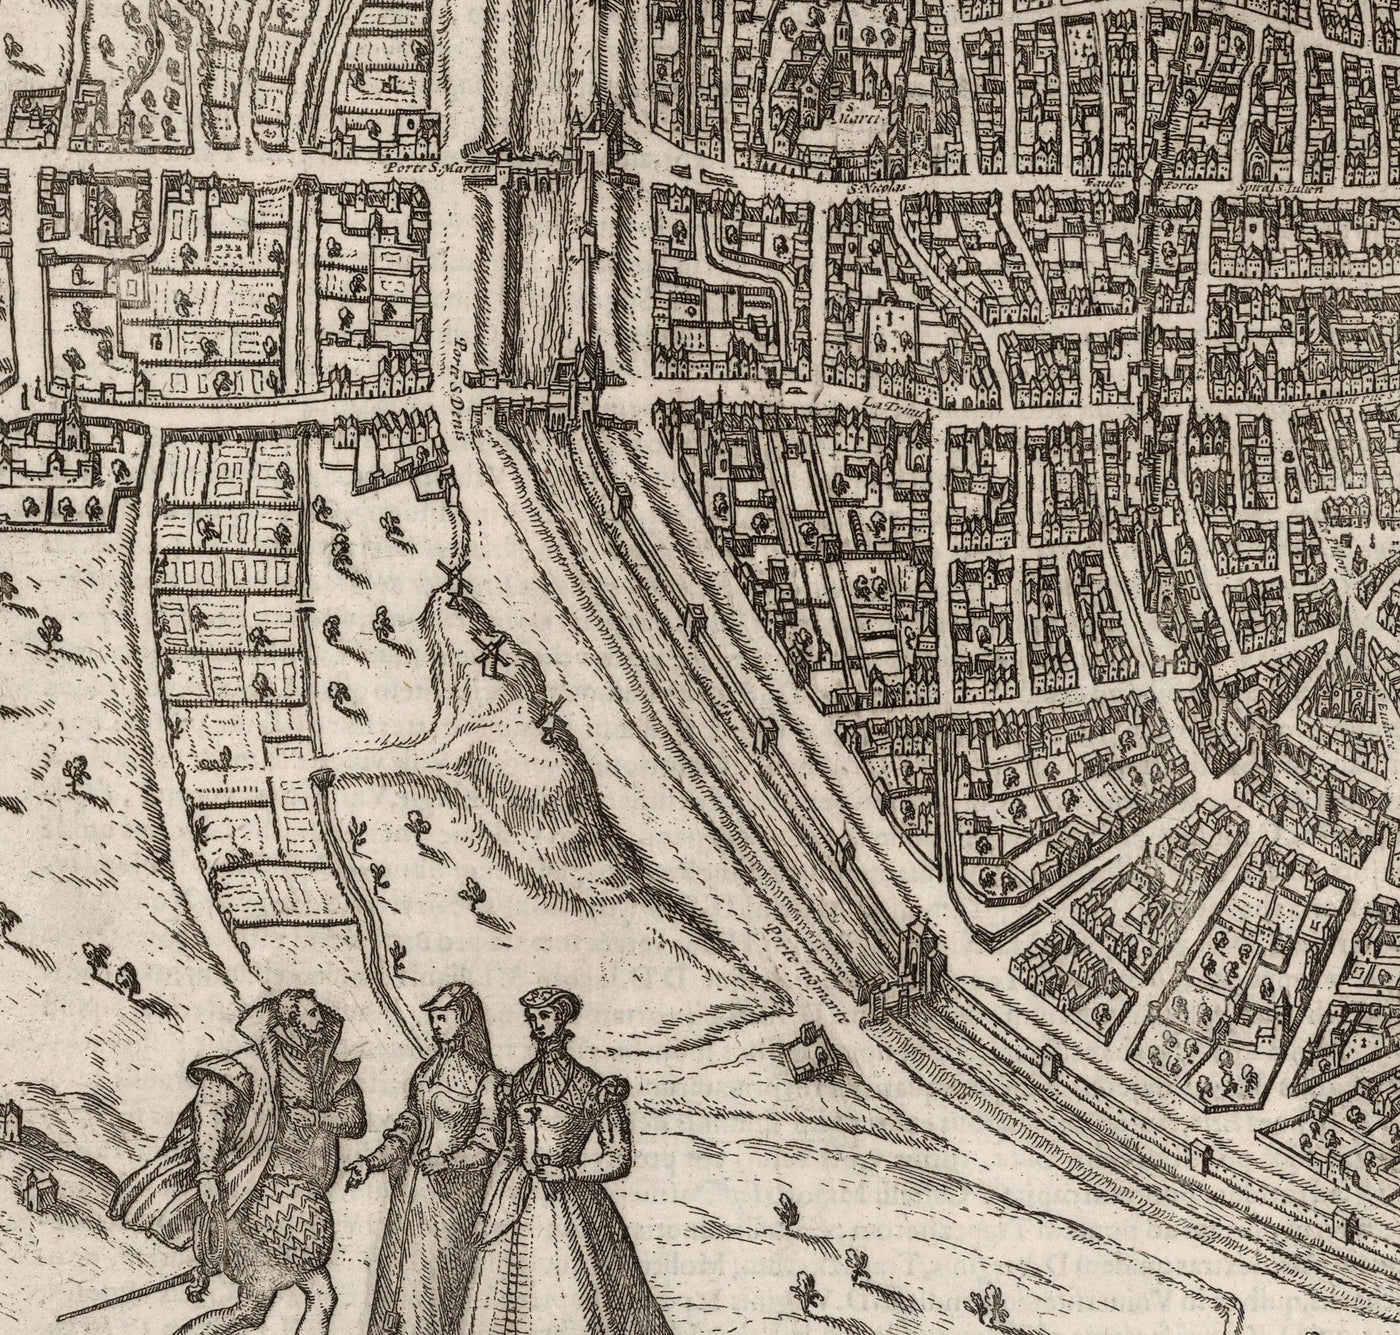 Alte monochrome Karte von Paris, 1572 von Braun - Notre Dame, Sainte Chapelle, Bastille, Seine, Kathedrale, Stadtmauern